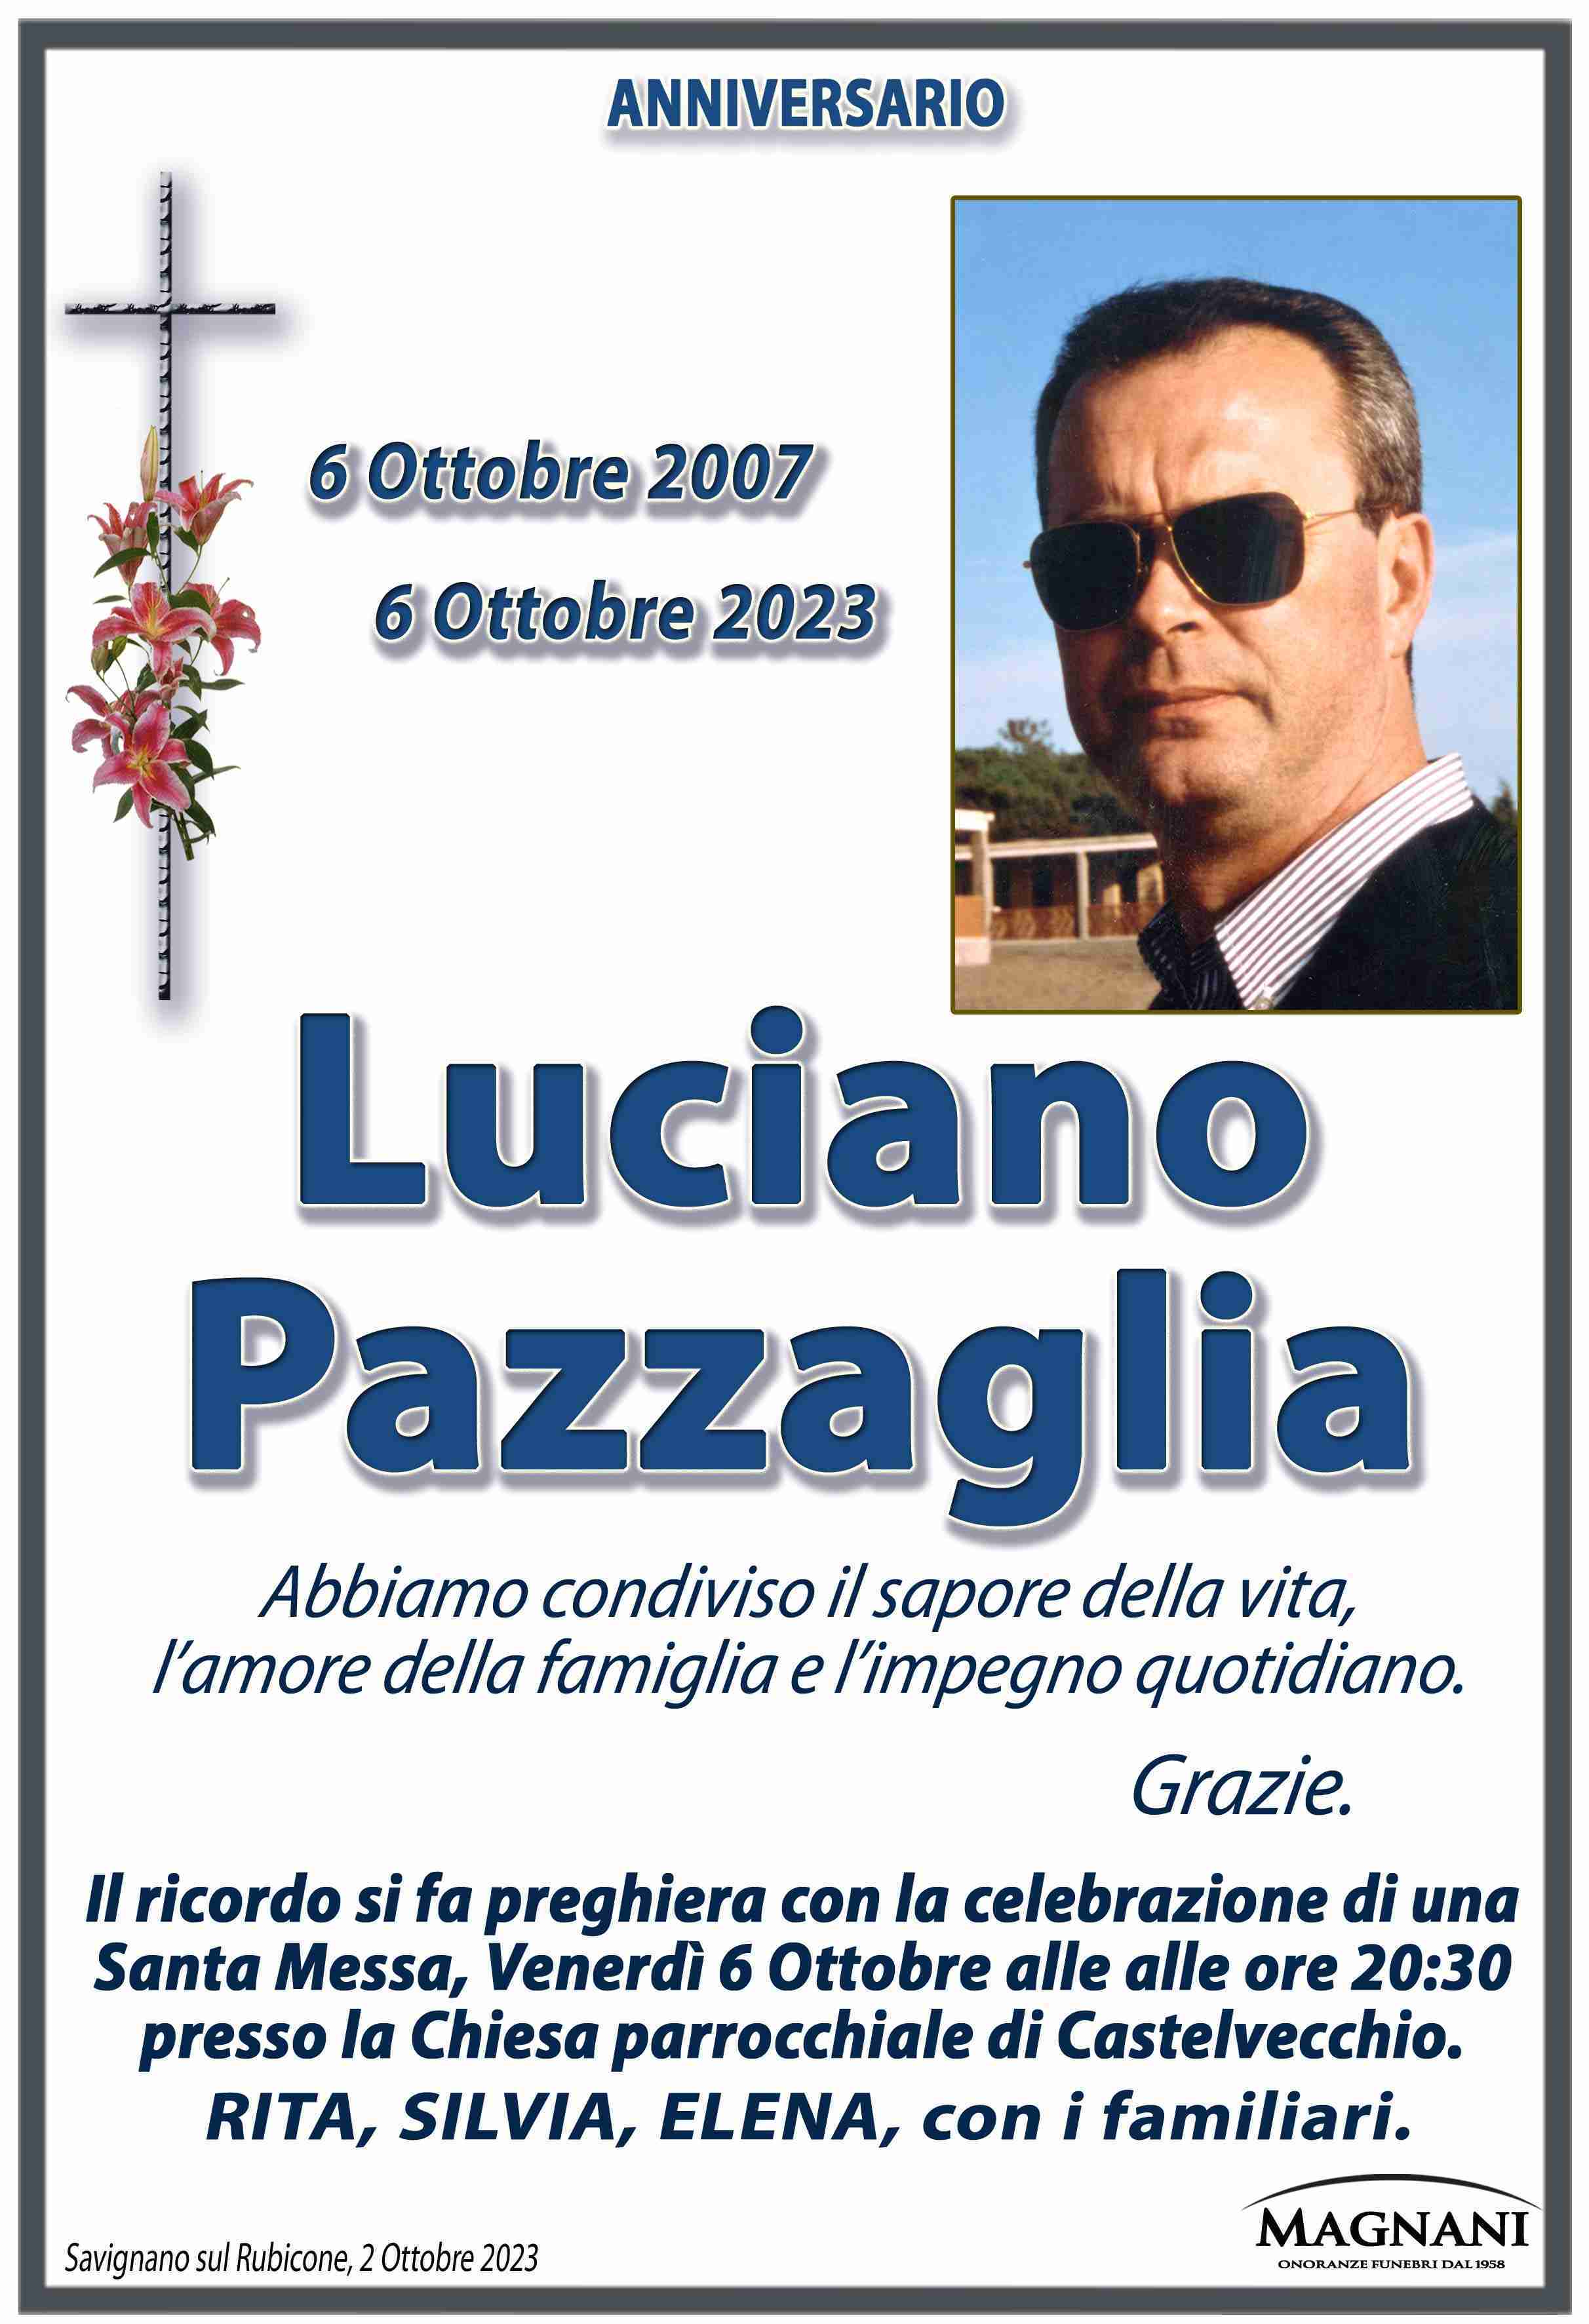 Luciano Pazzaglia